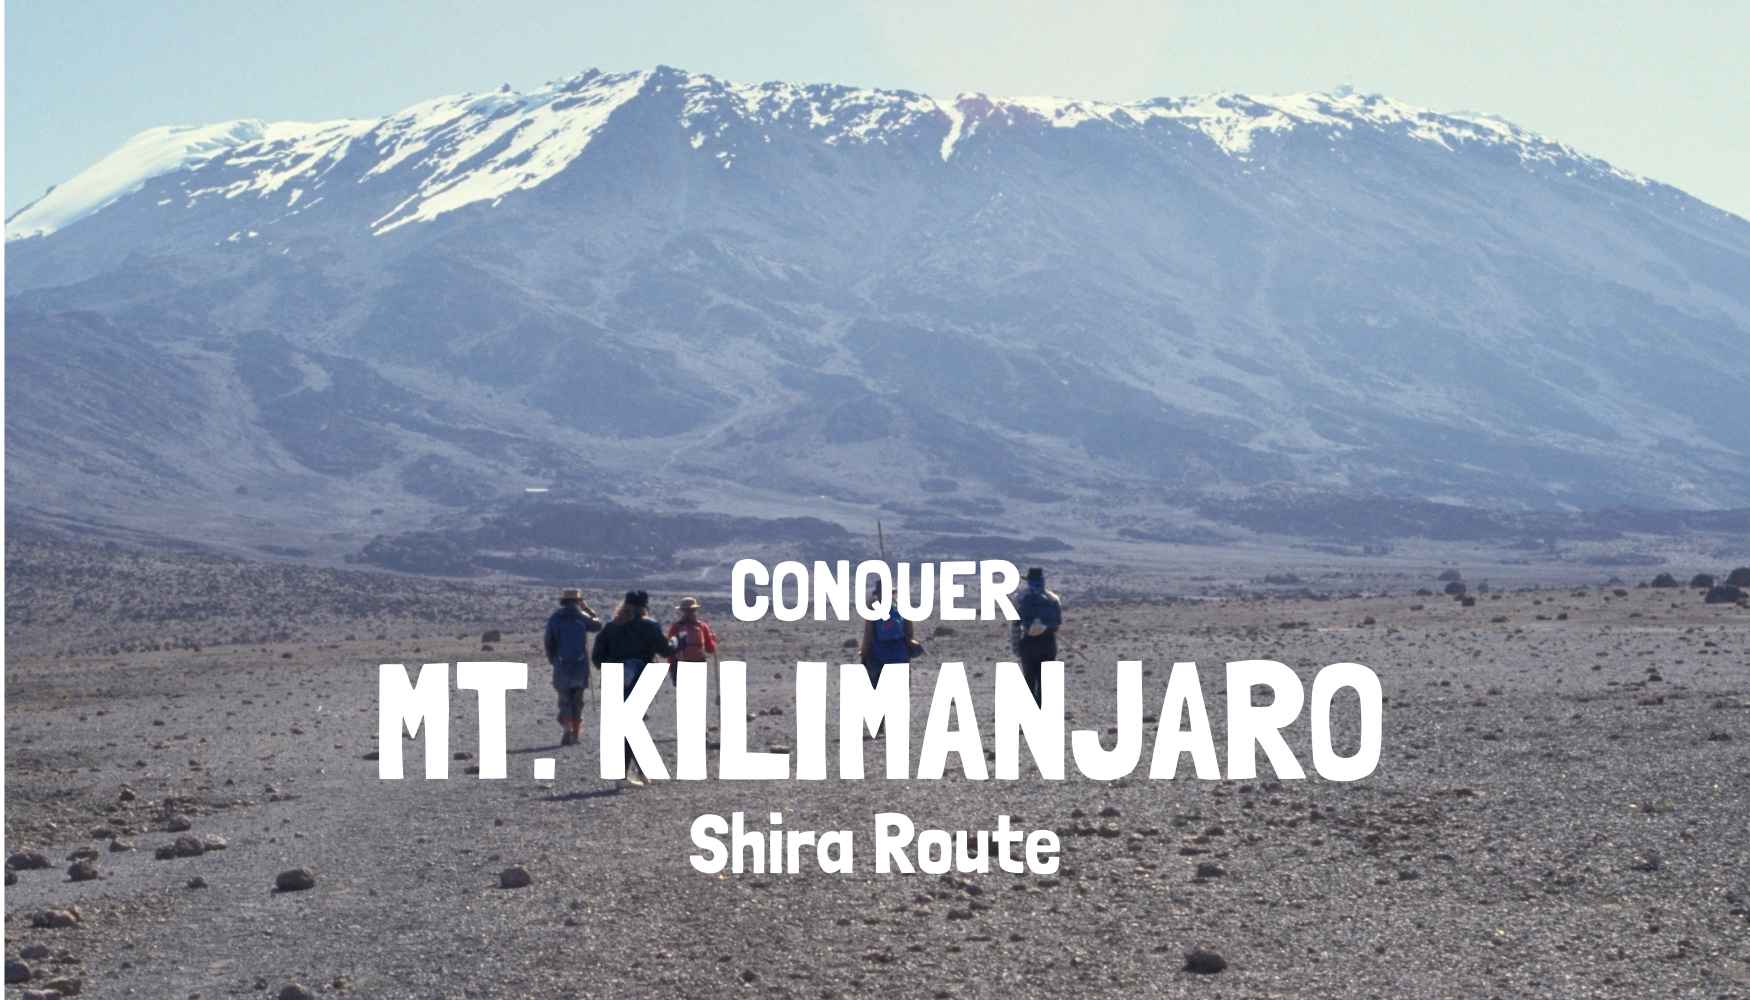 Kilimanjaro Shira Route Tanzania